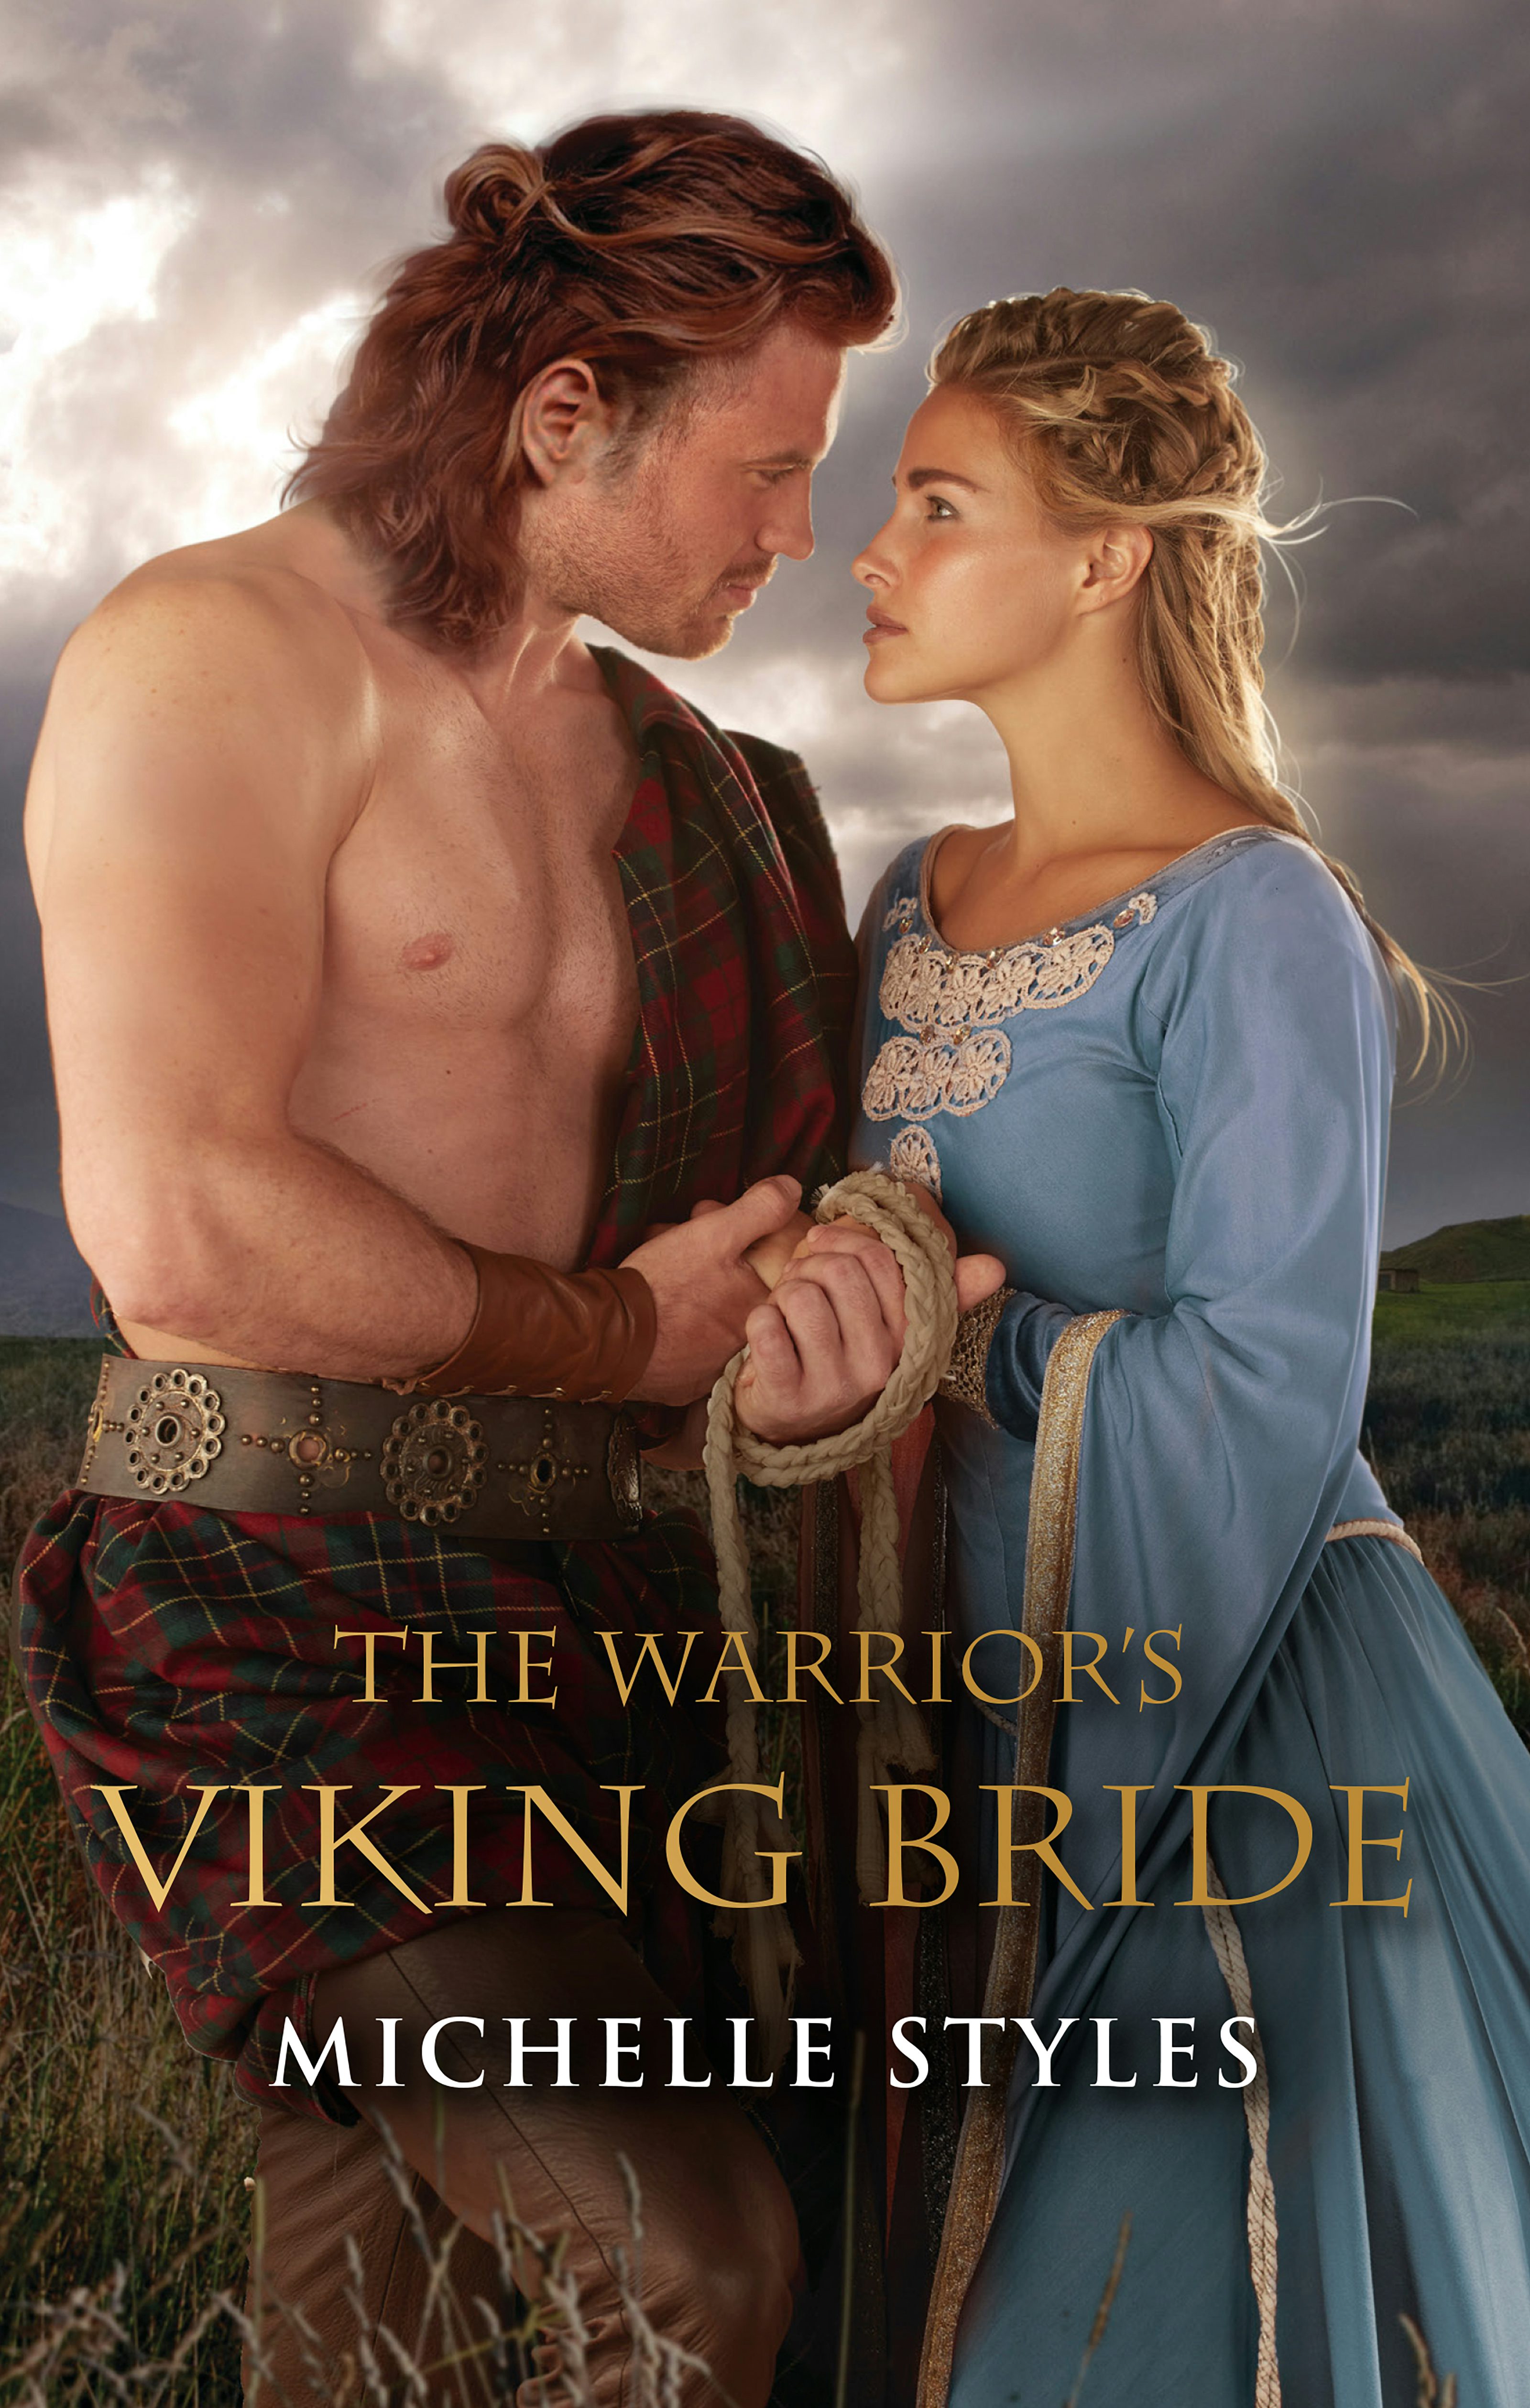 Redeeming Her Viking Warrior by Jenni Fletcher